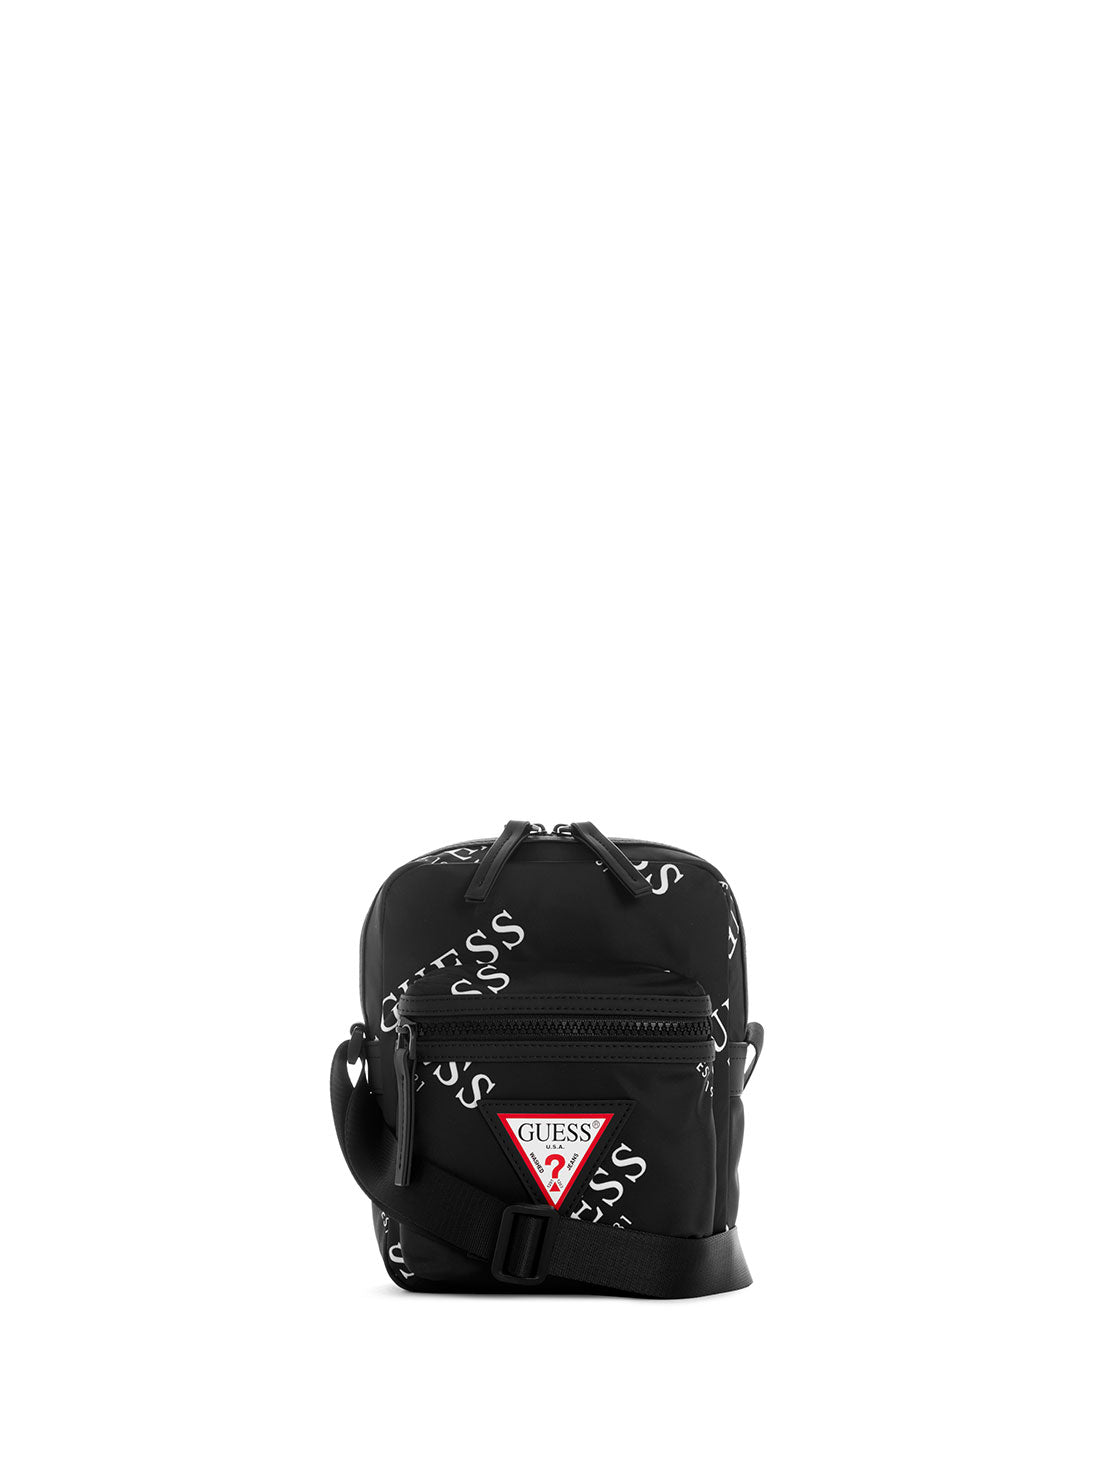 GUESS Men's Black Originals Logo Camera Bag TL703191 Front View